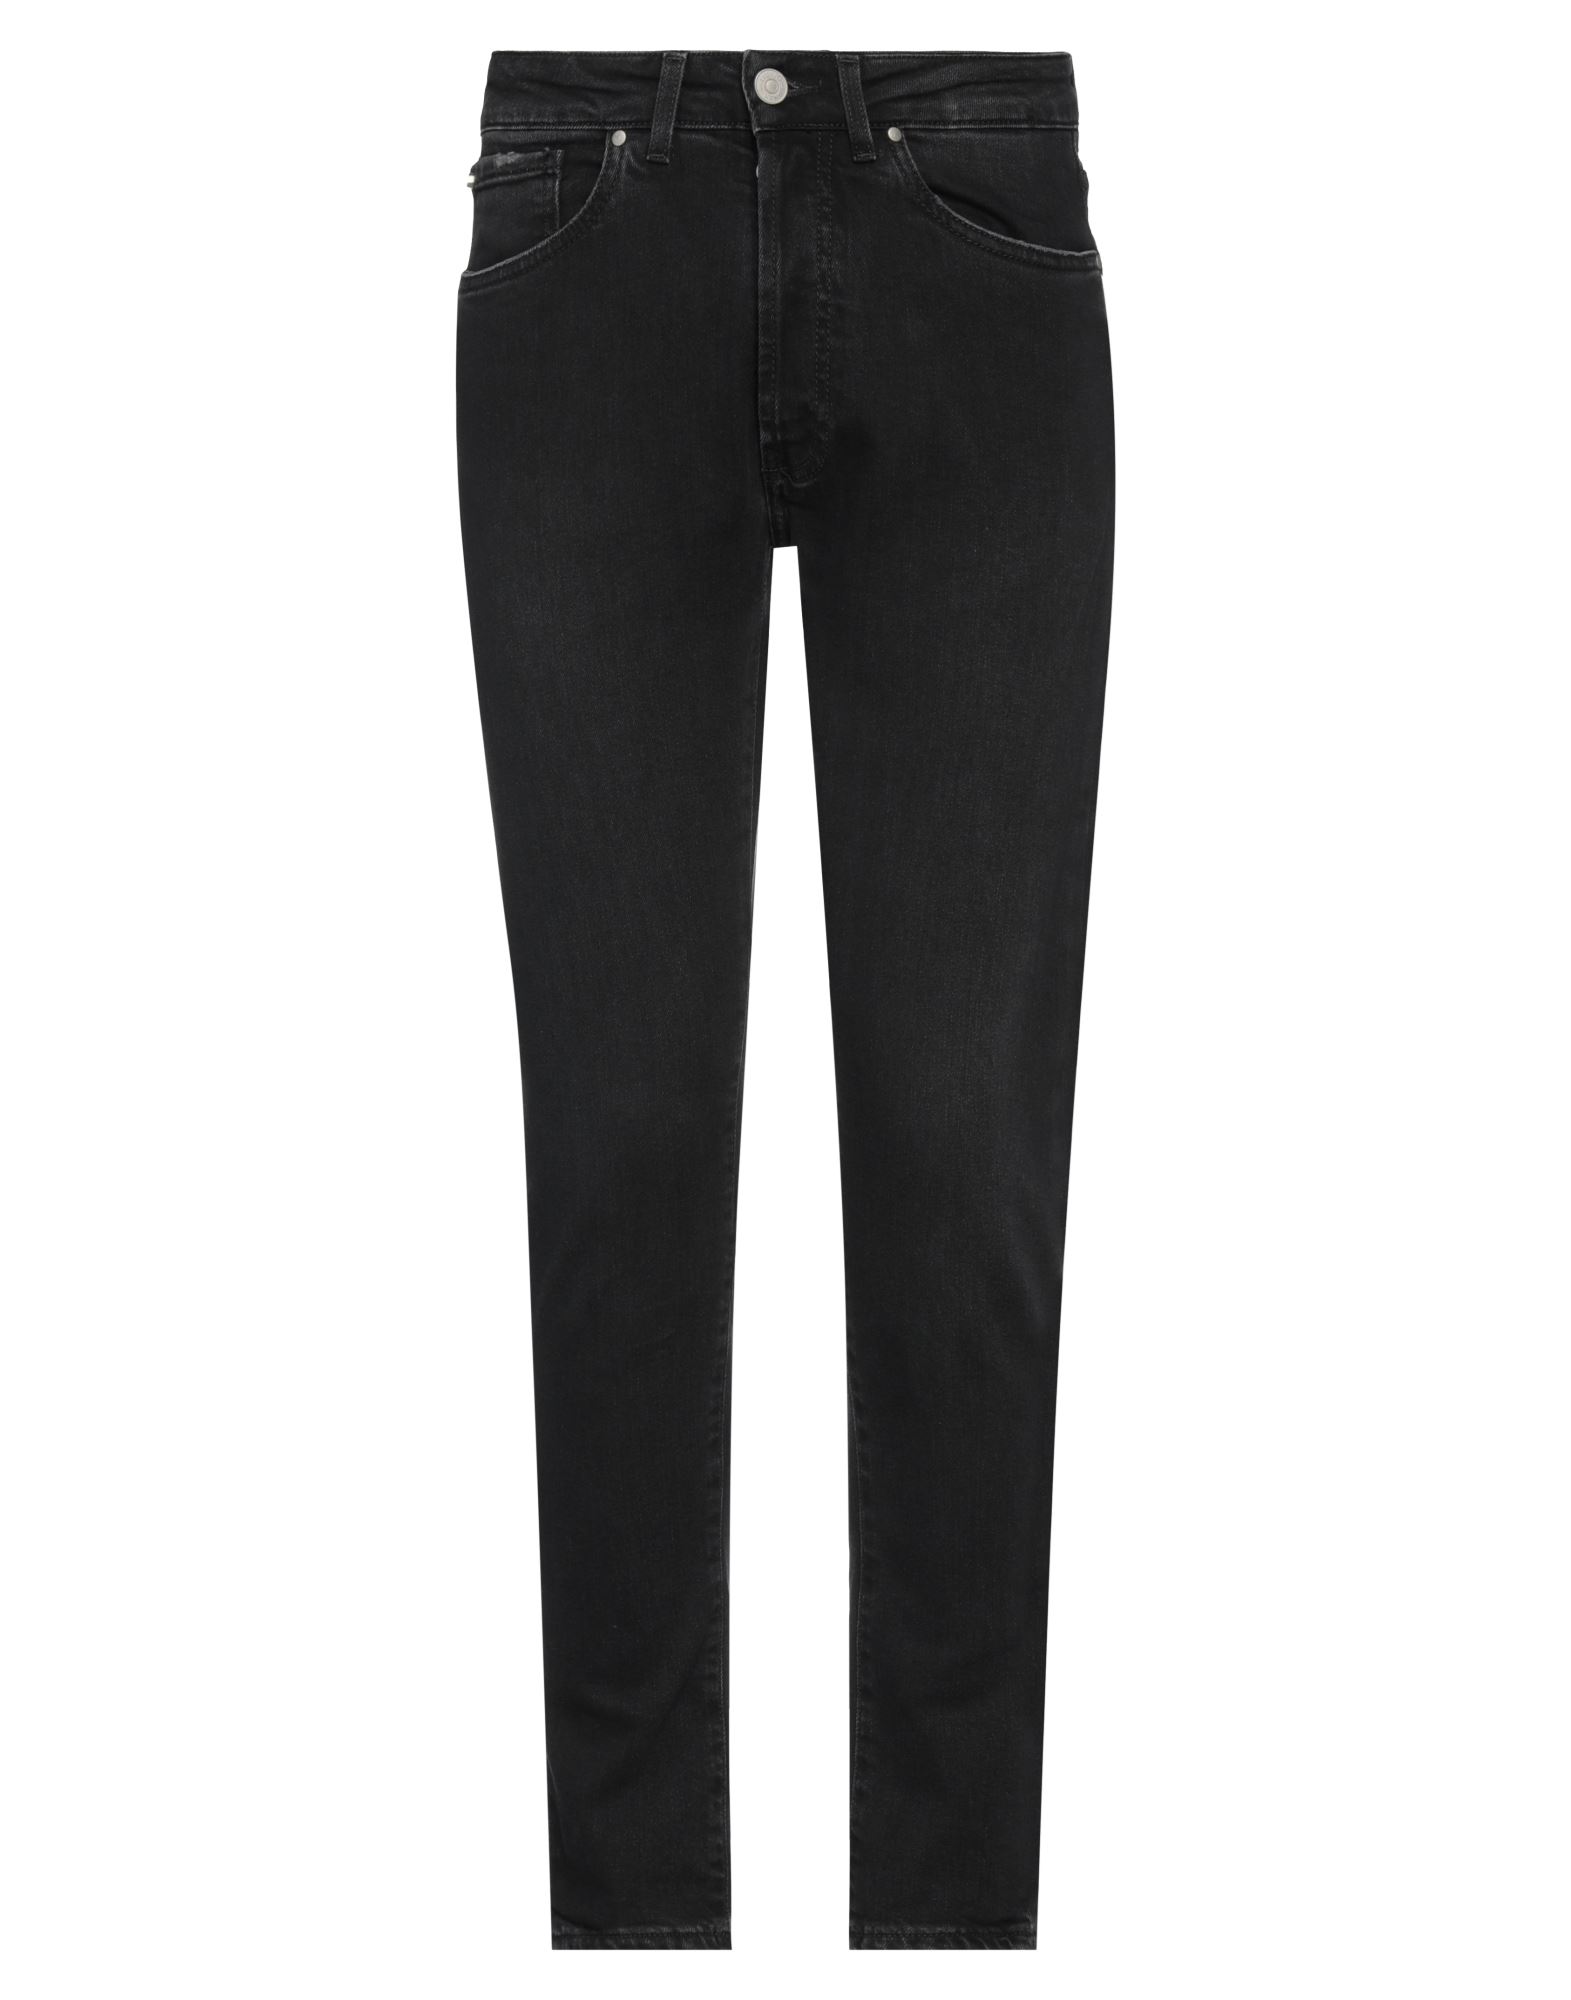 Liu •jo Man Man Jeans Black Size 31 Cotton, Elastane